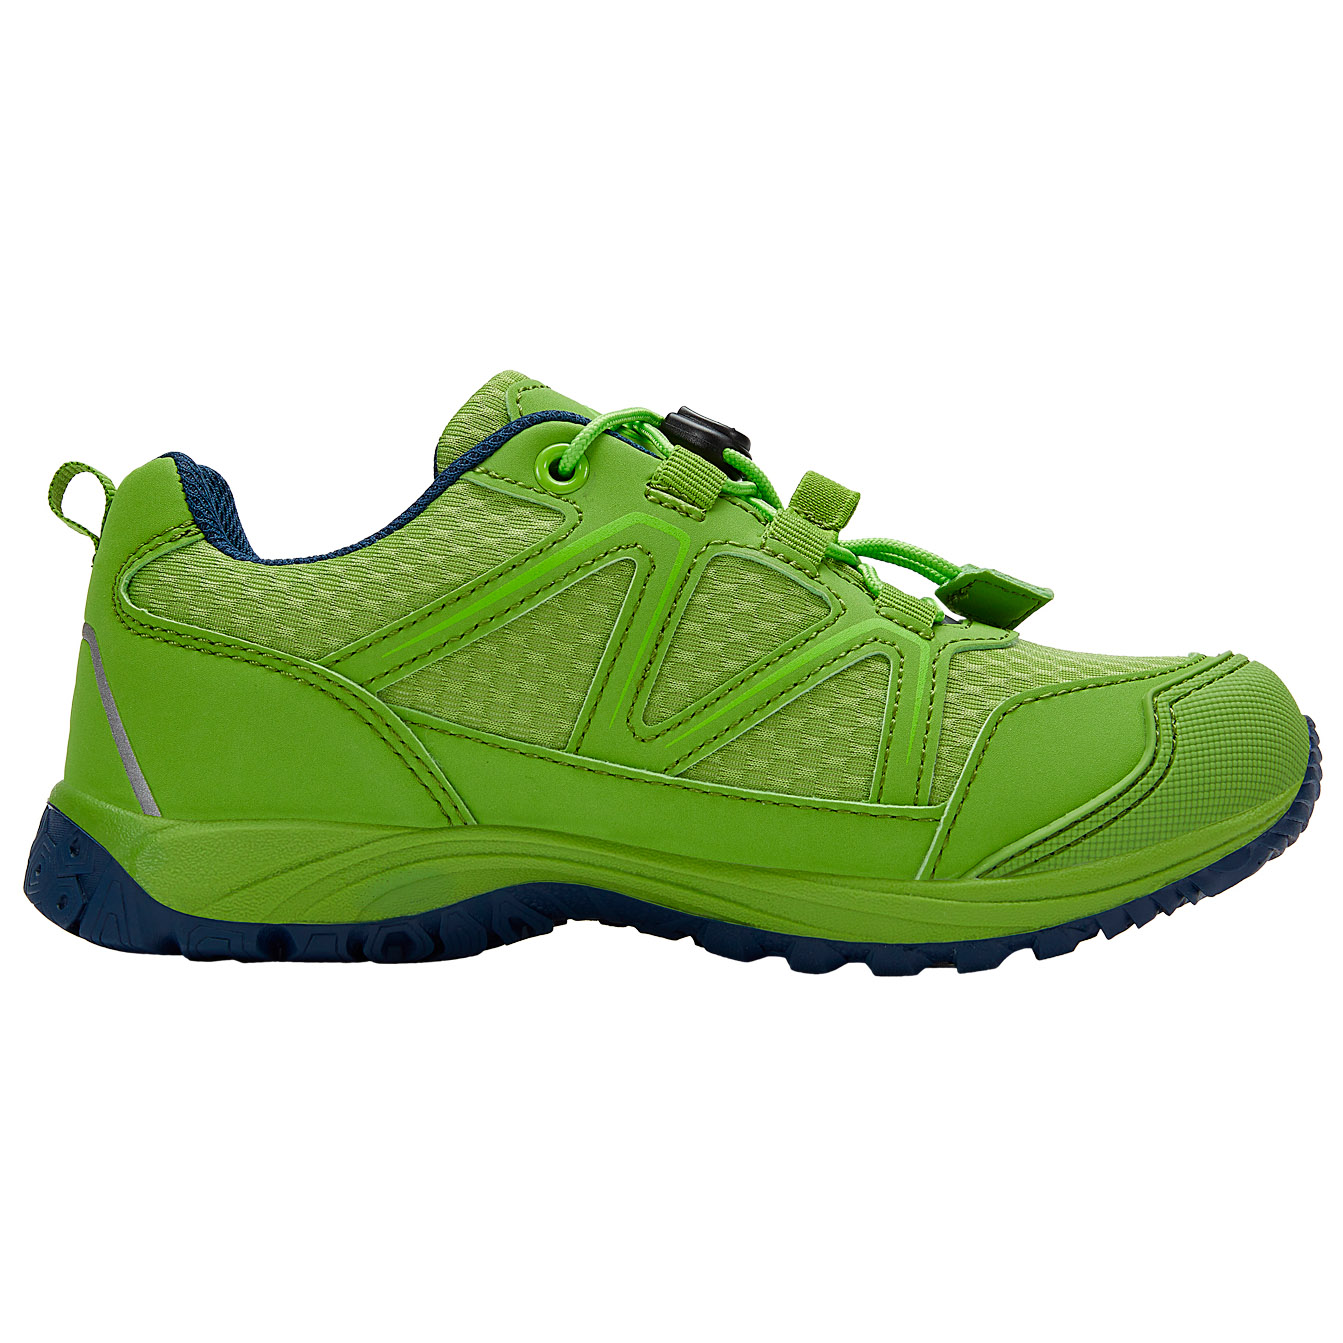 Мультиспортивная обувь Trollkids Kid's Skarvan Hiker Low, цвет Kiwi/Green Lizard green kiwi 500g